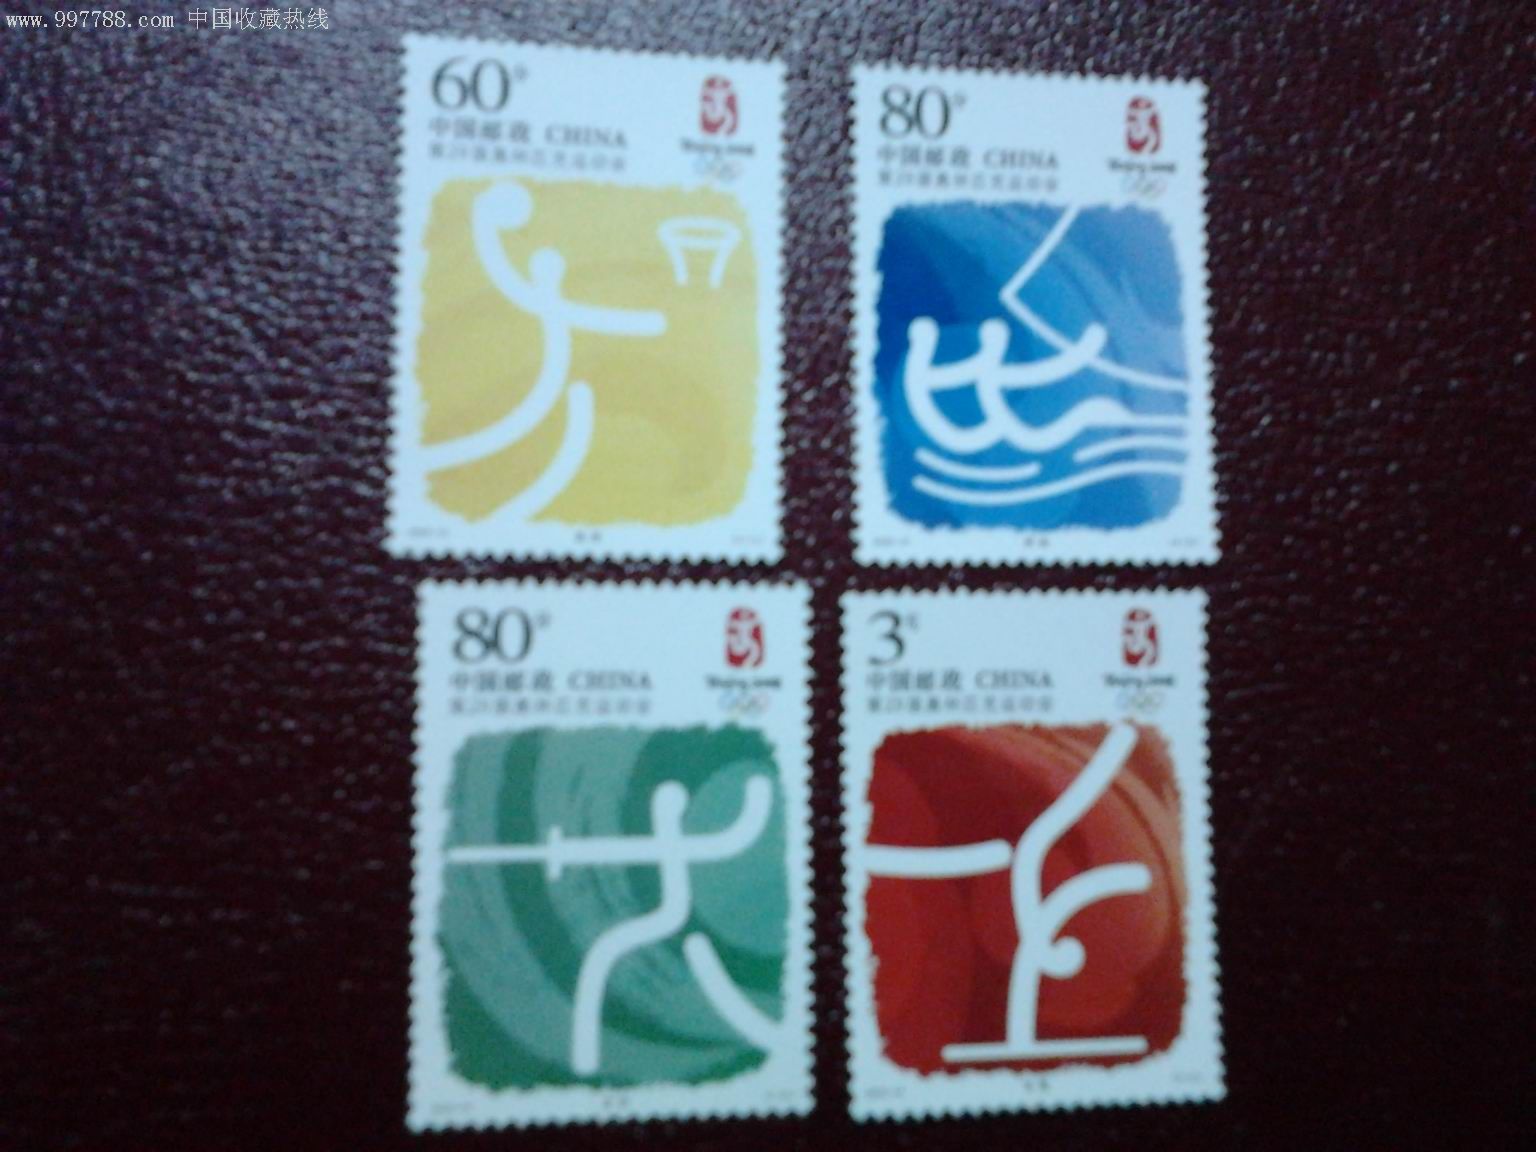 2008年北京奥运会邮票图片